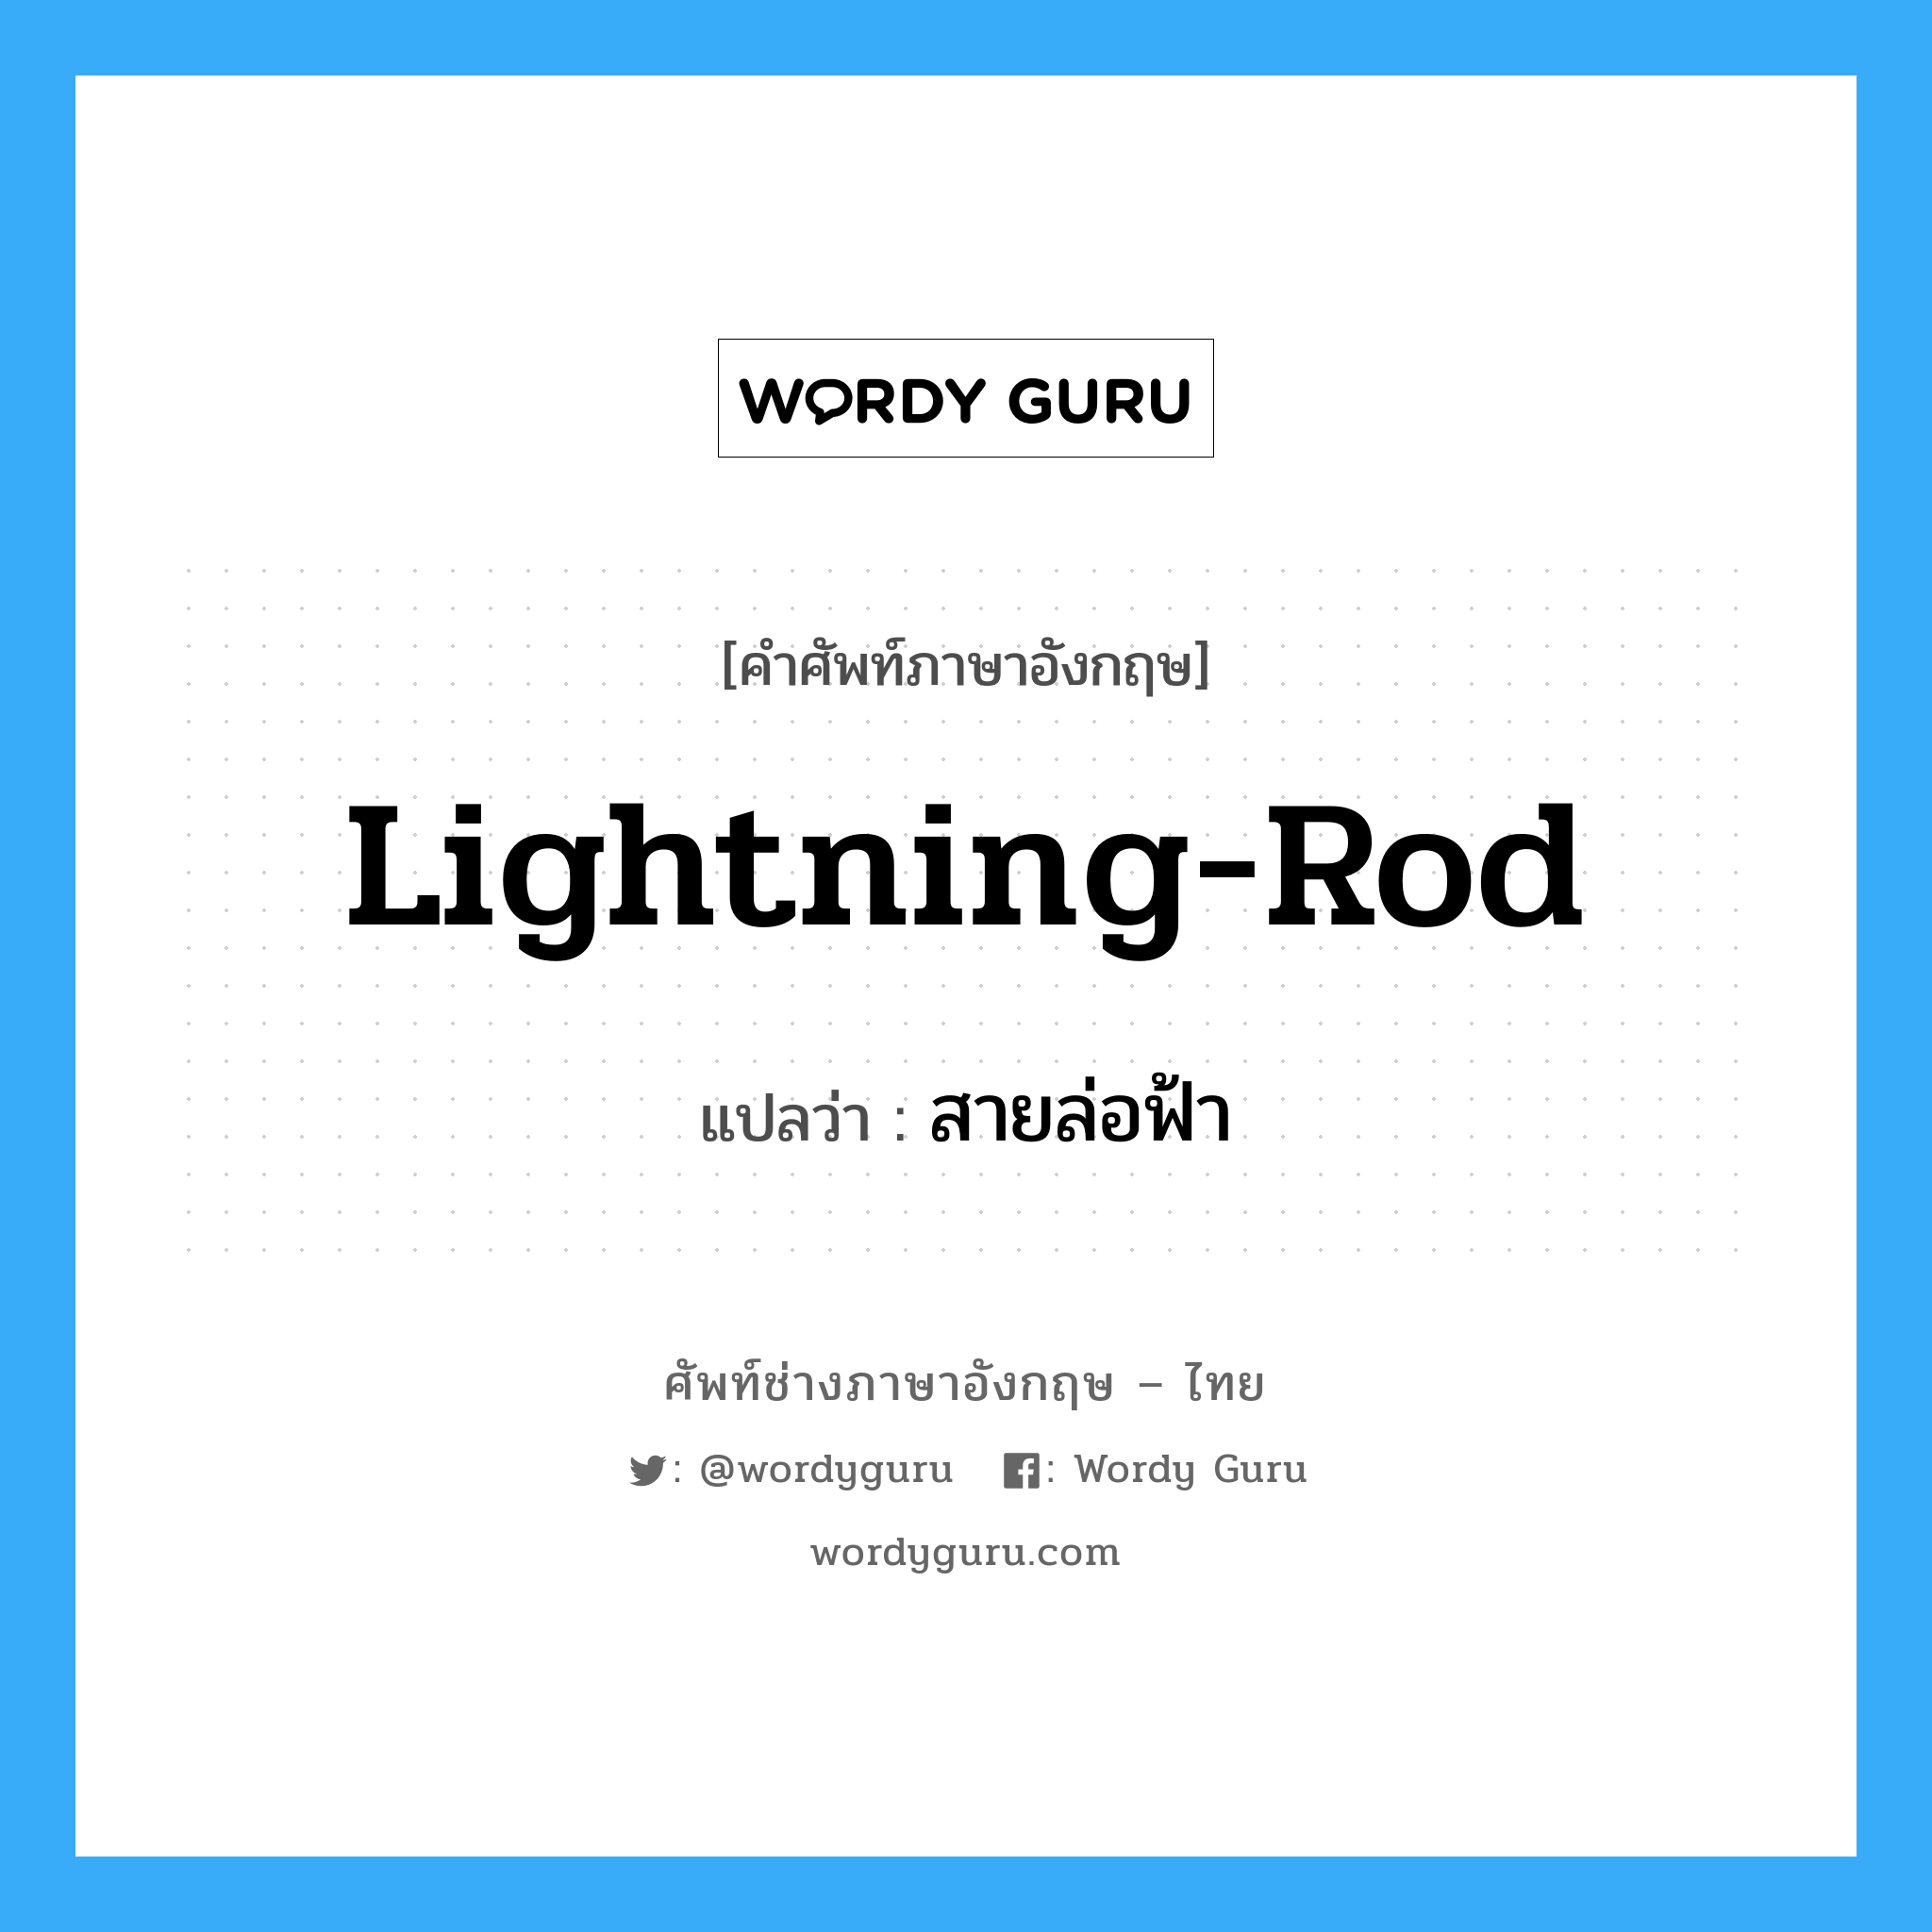 lightning-rod แปลว่า?, คำศัพท์ช่างภาษาอังกฤษ - ไทย lightning-rod คำศัพท์ภาษาอังกฤษ lightning-rod แปลว่า สายล่อฟ้า